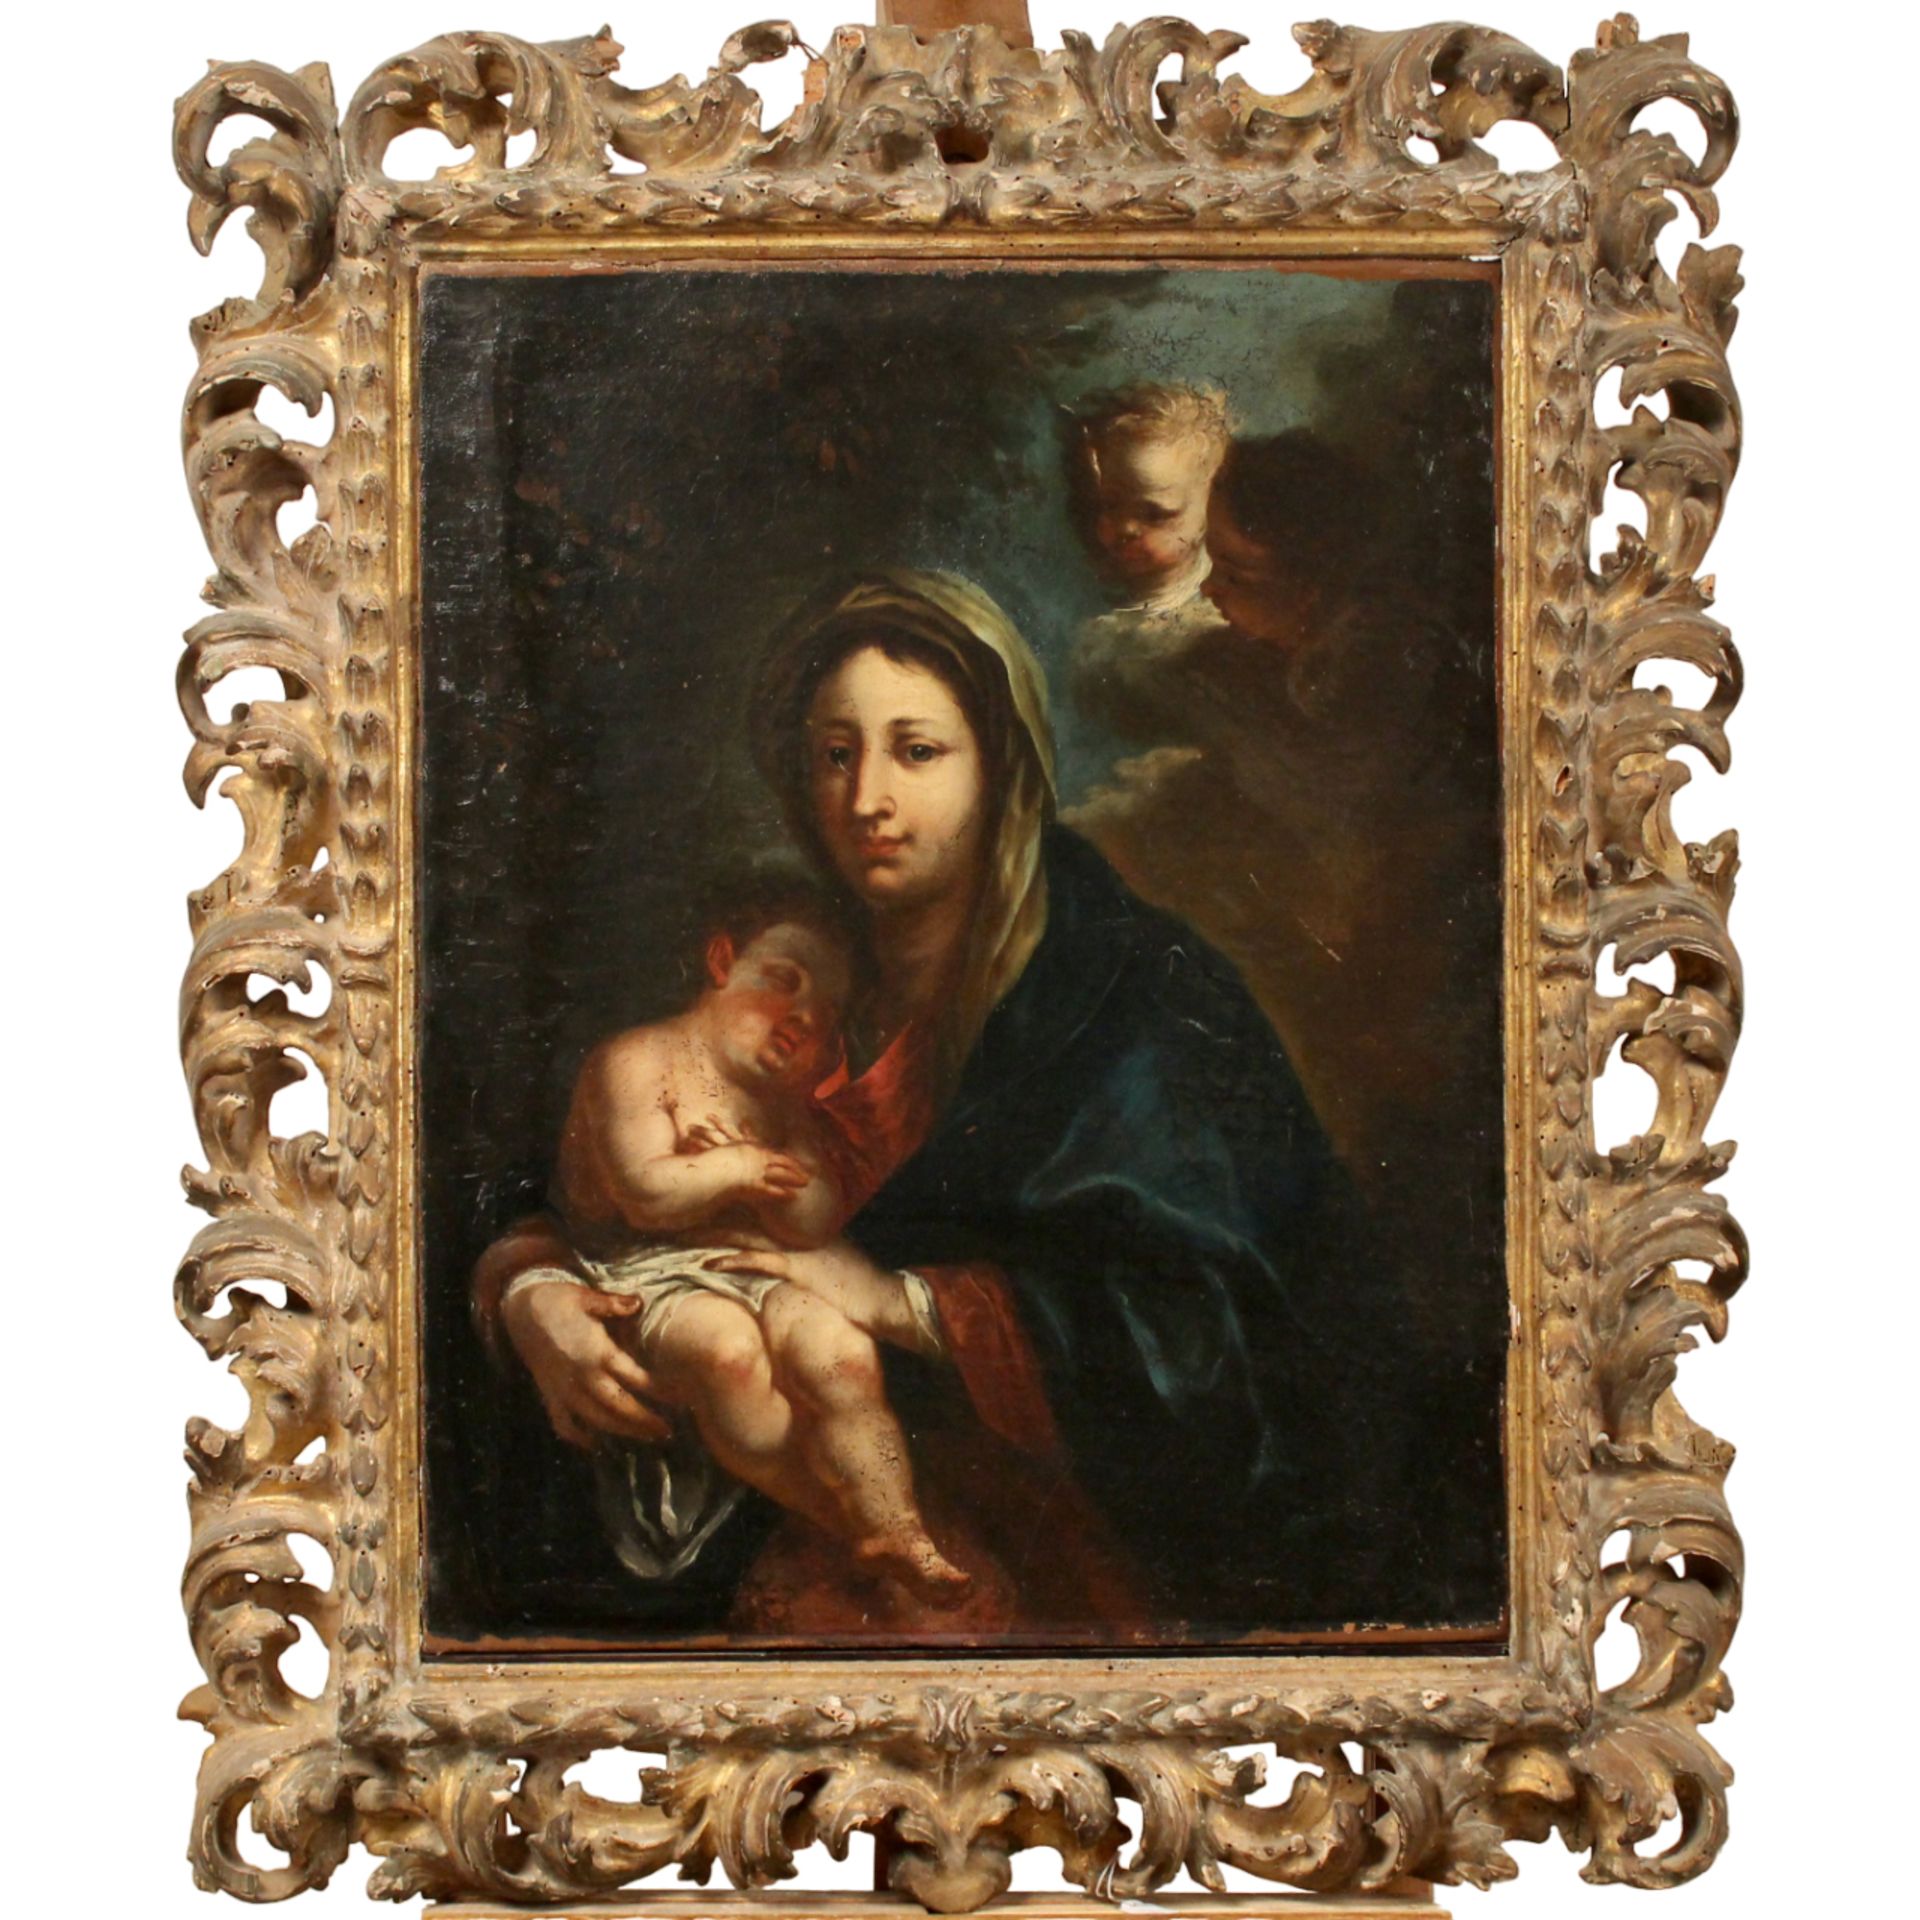 Scuola napoletana della fine del secolo XVII "La Madonna con il Bambino" - Neapolitan school of the